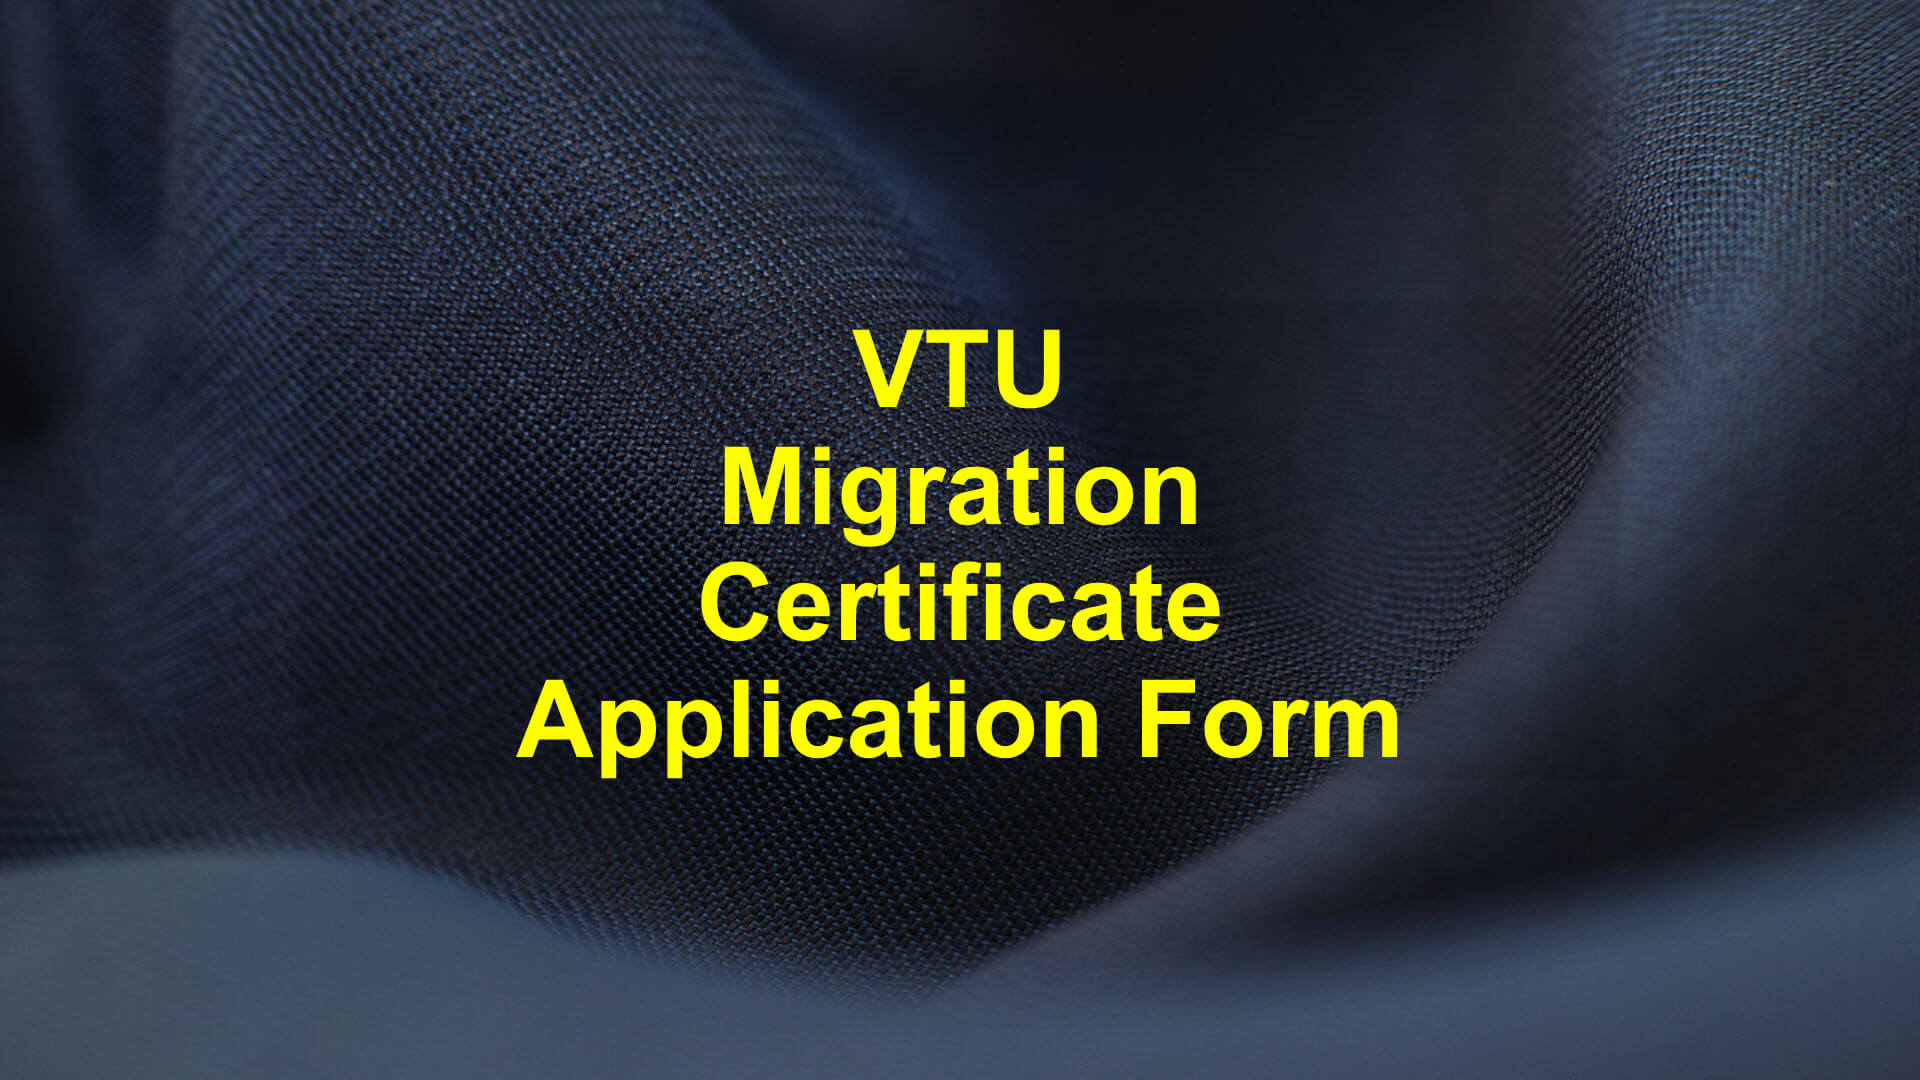 Vtu migration certificate